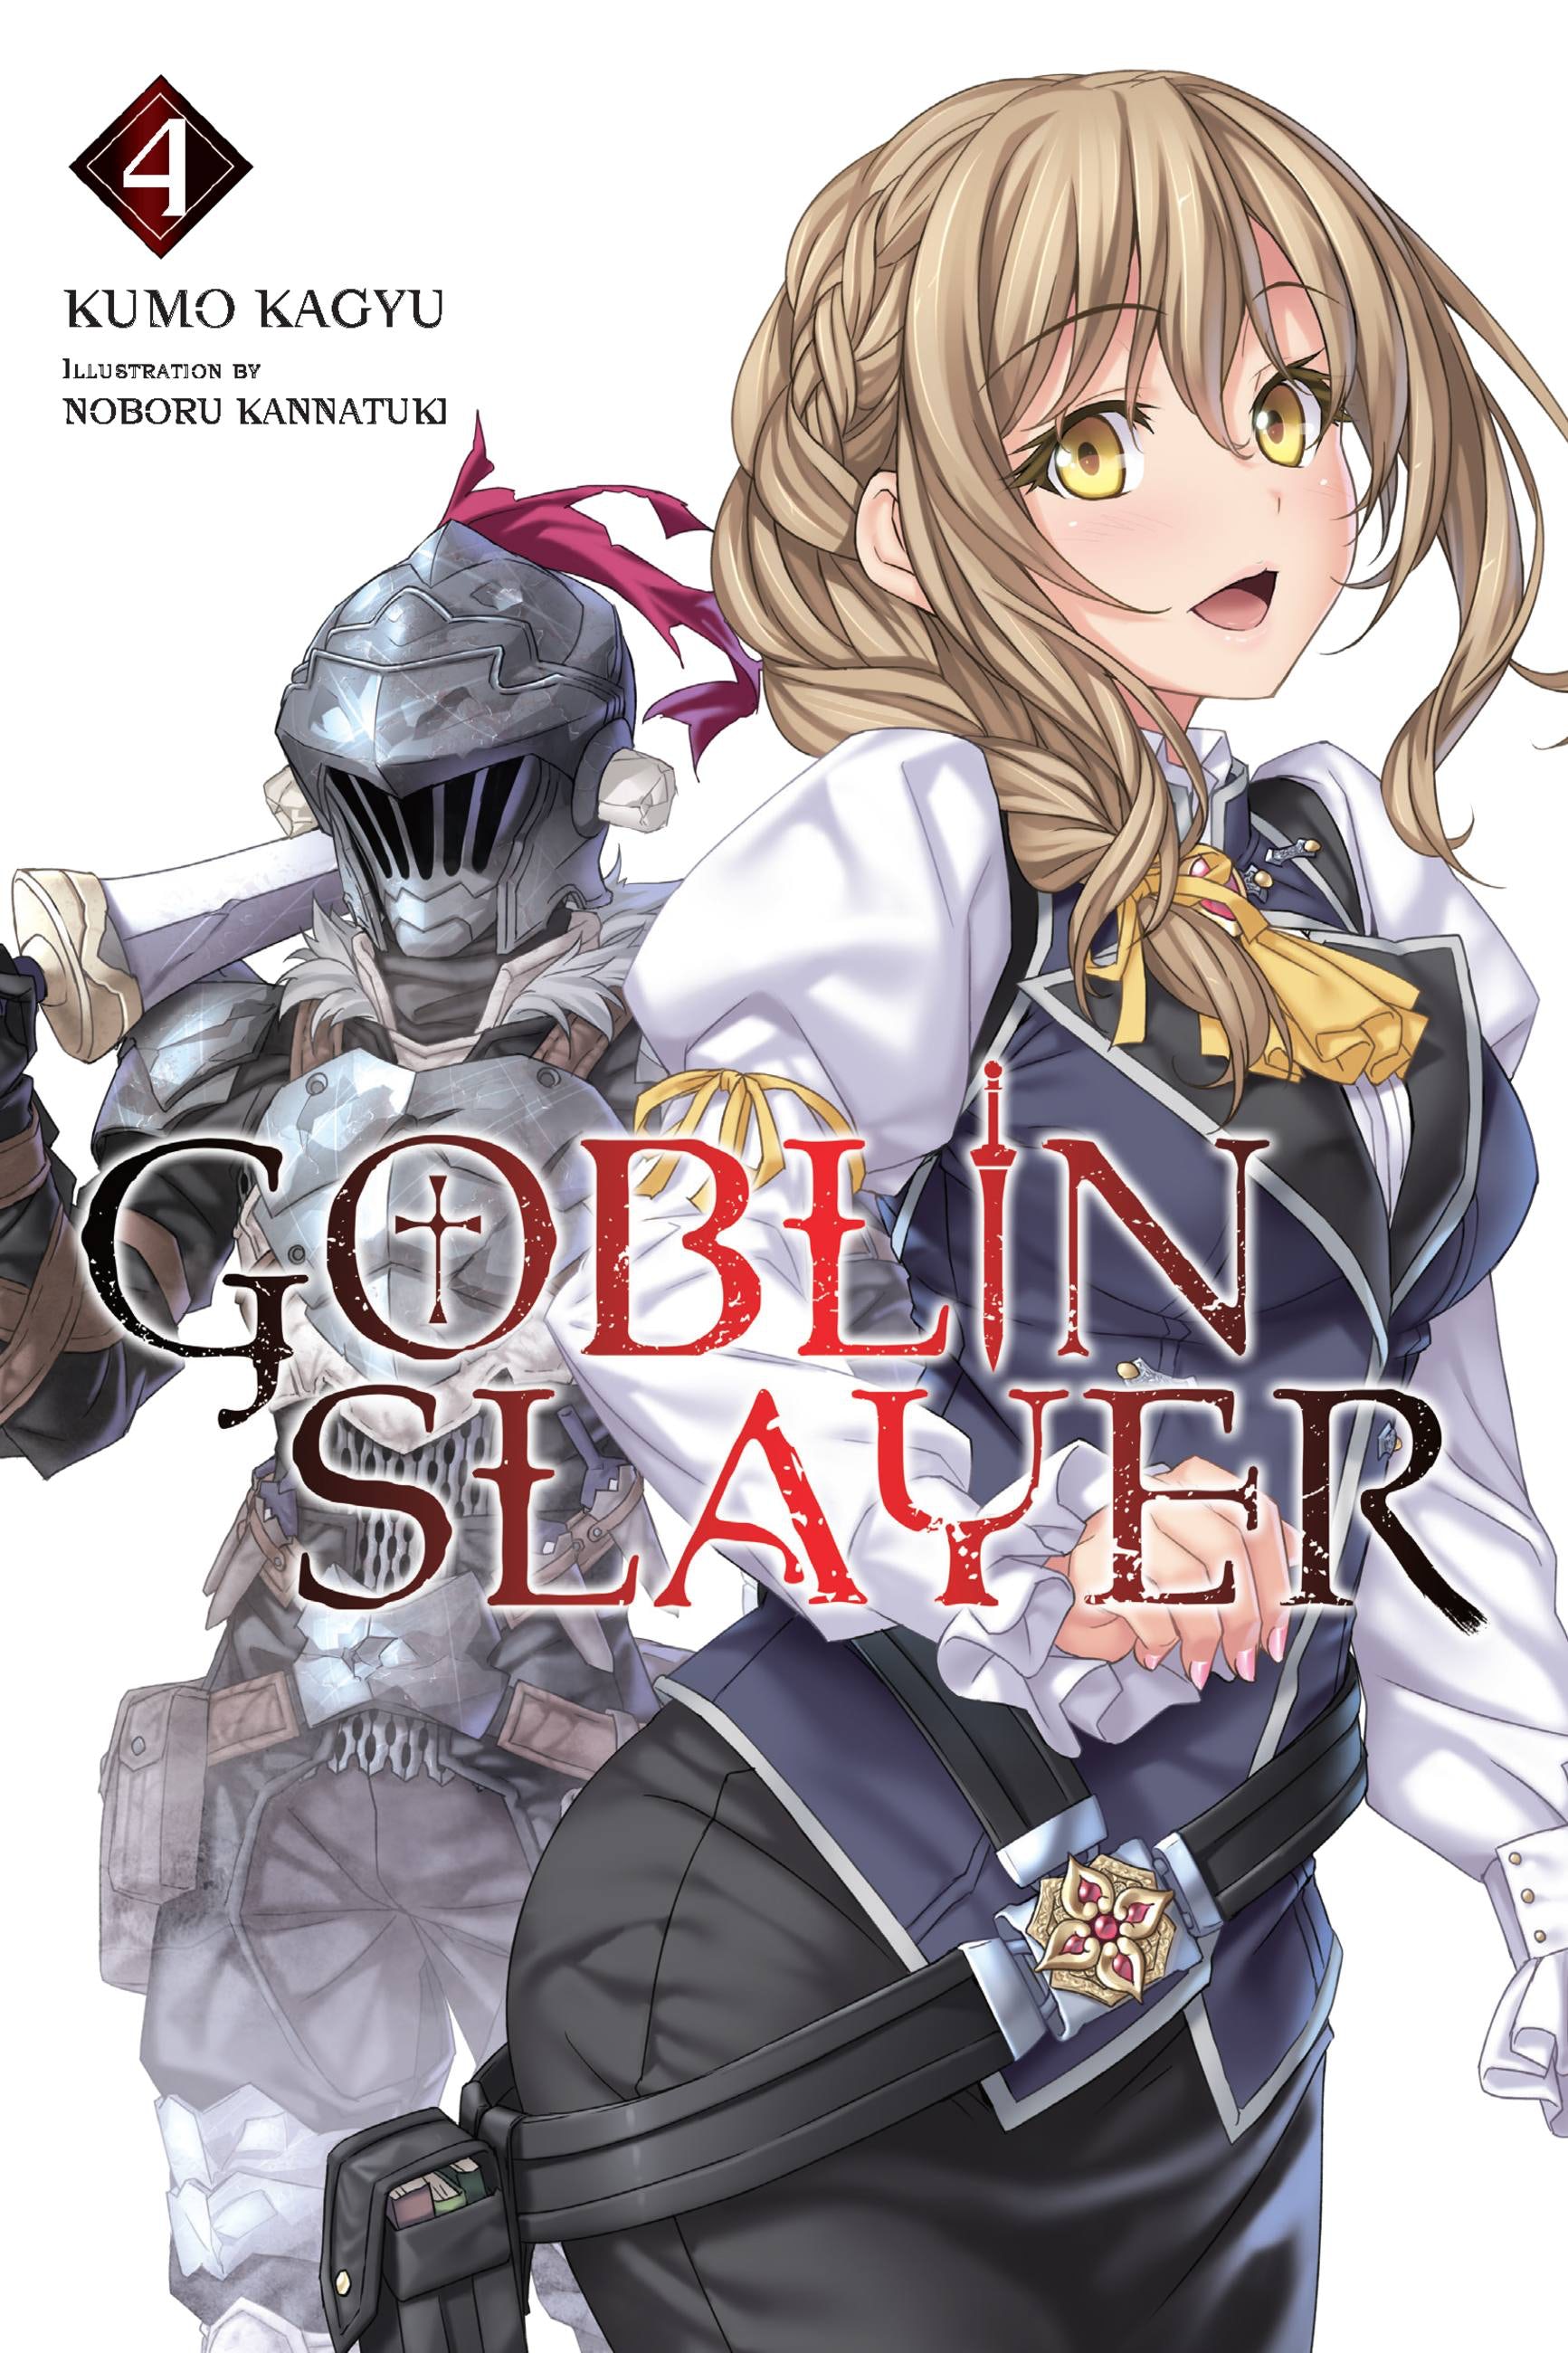 Light Novel Volume 12, Goblin Slayer Wiki